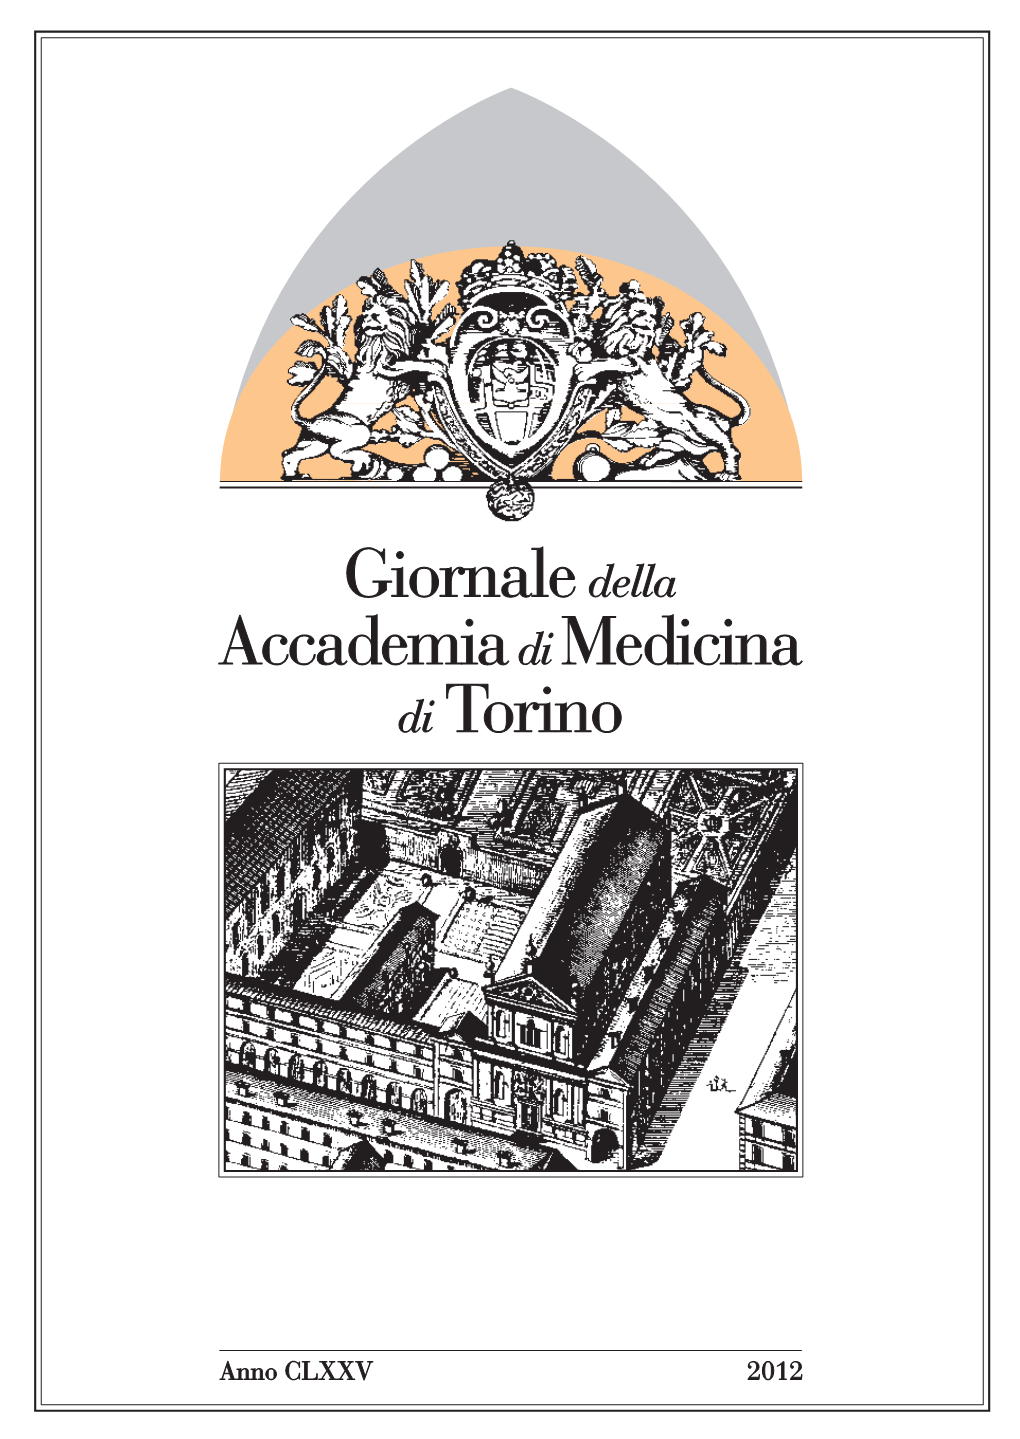 Giornale Dell'accademia Di Torino 2012